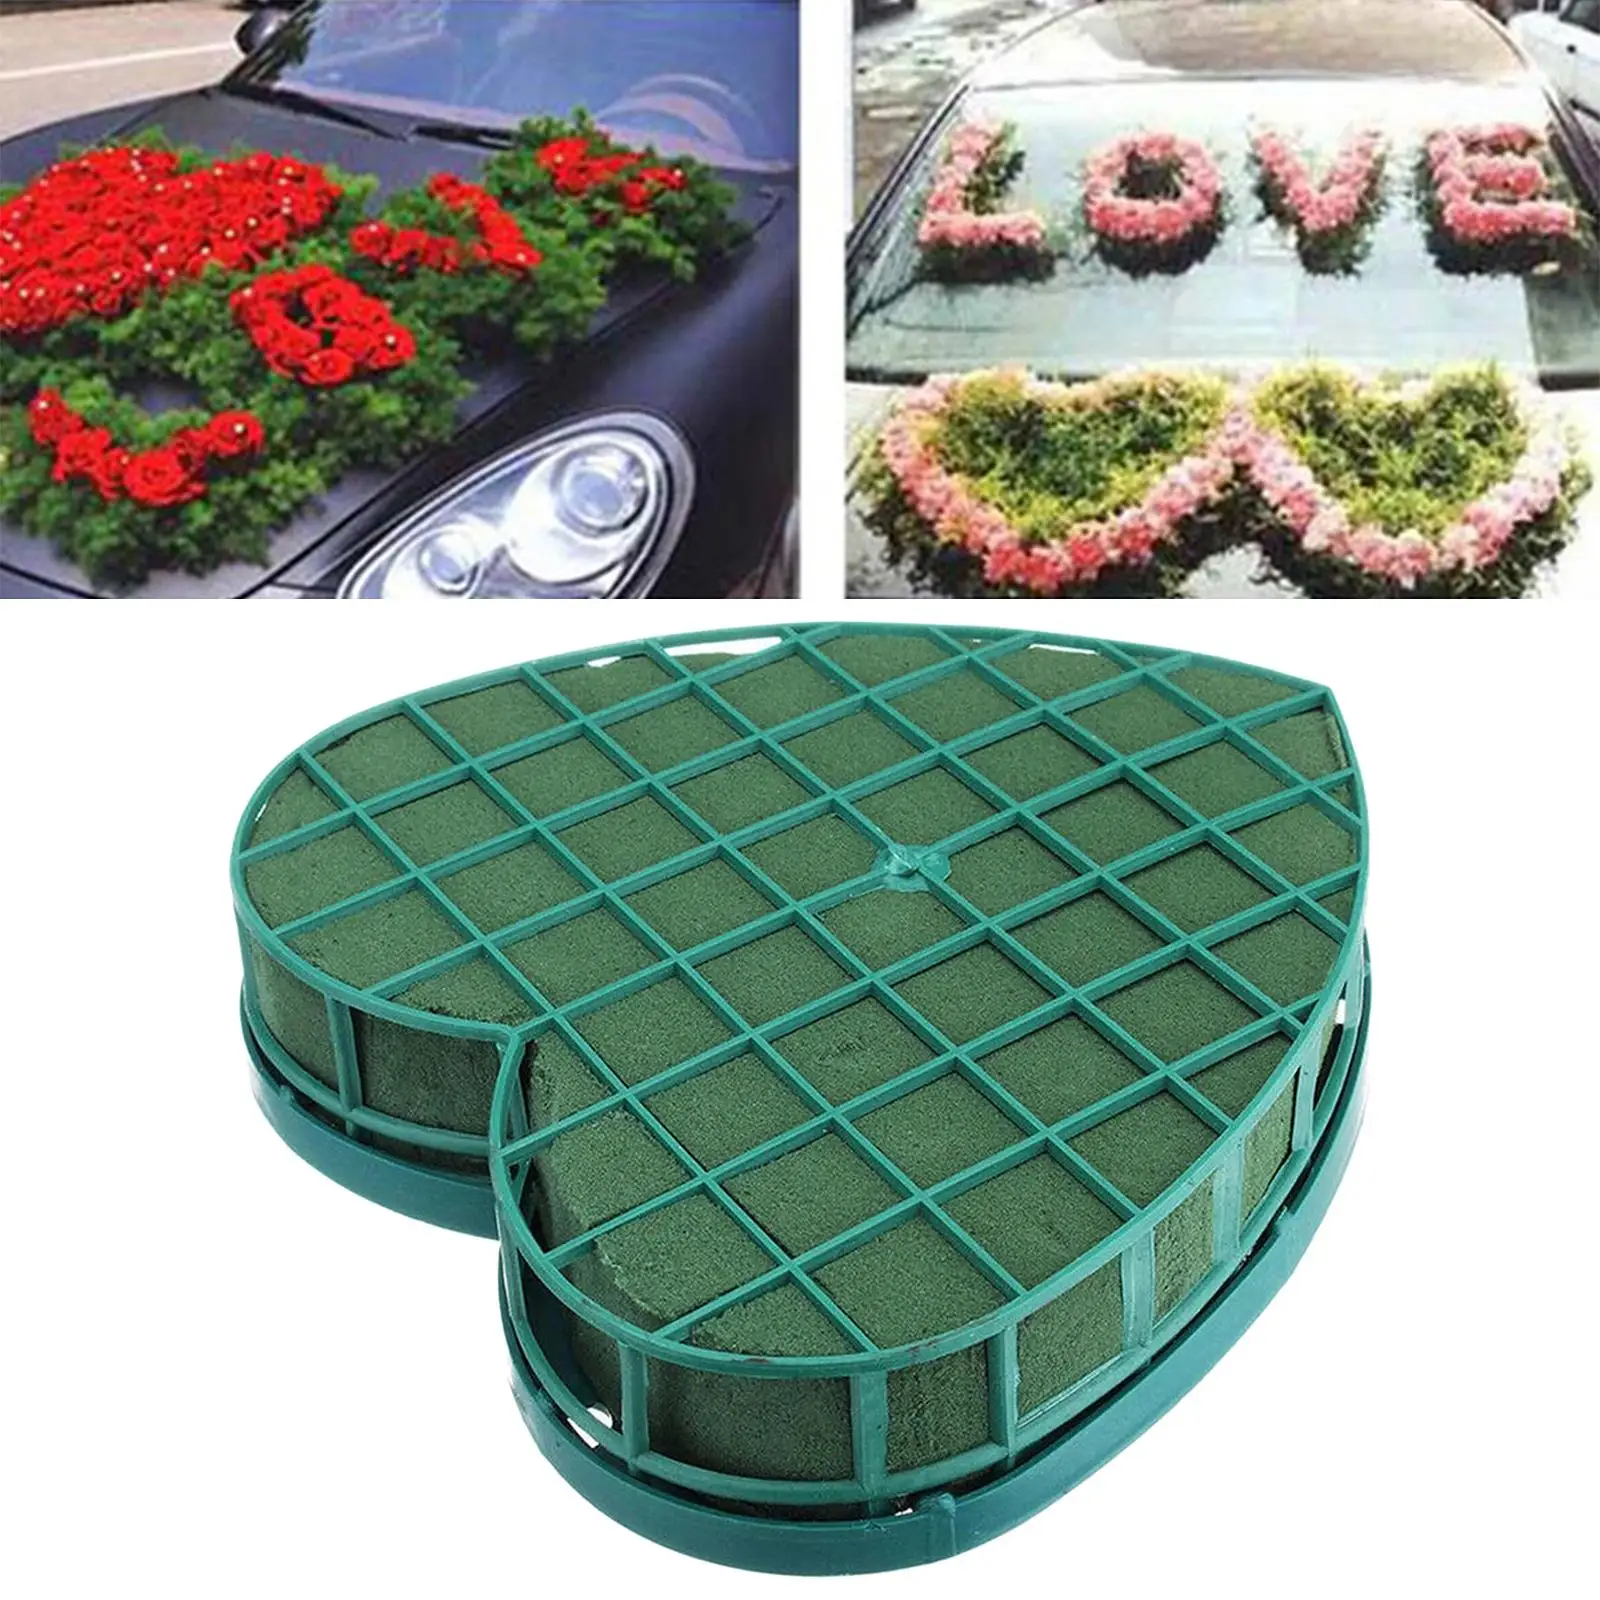 Heart Shaped Floral Foam Artificial Floral Arrangements Foams Base for Decor